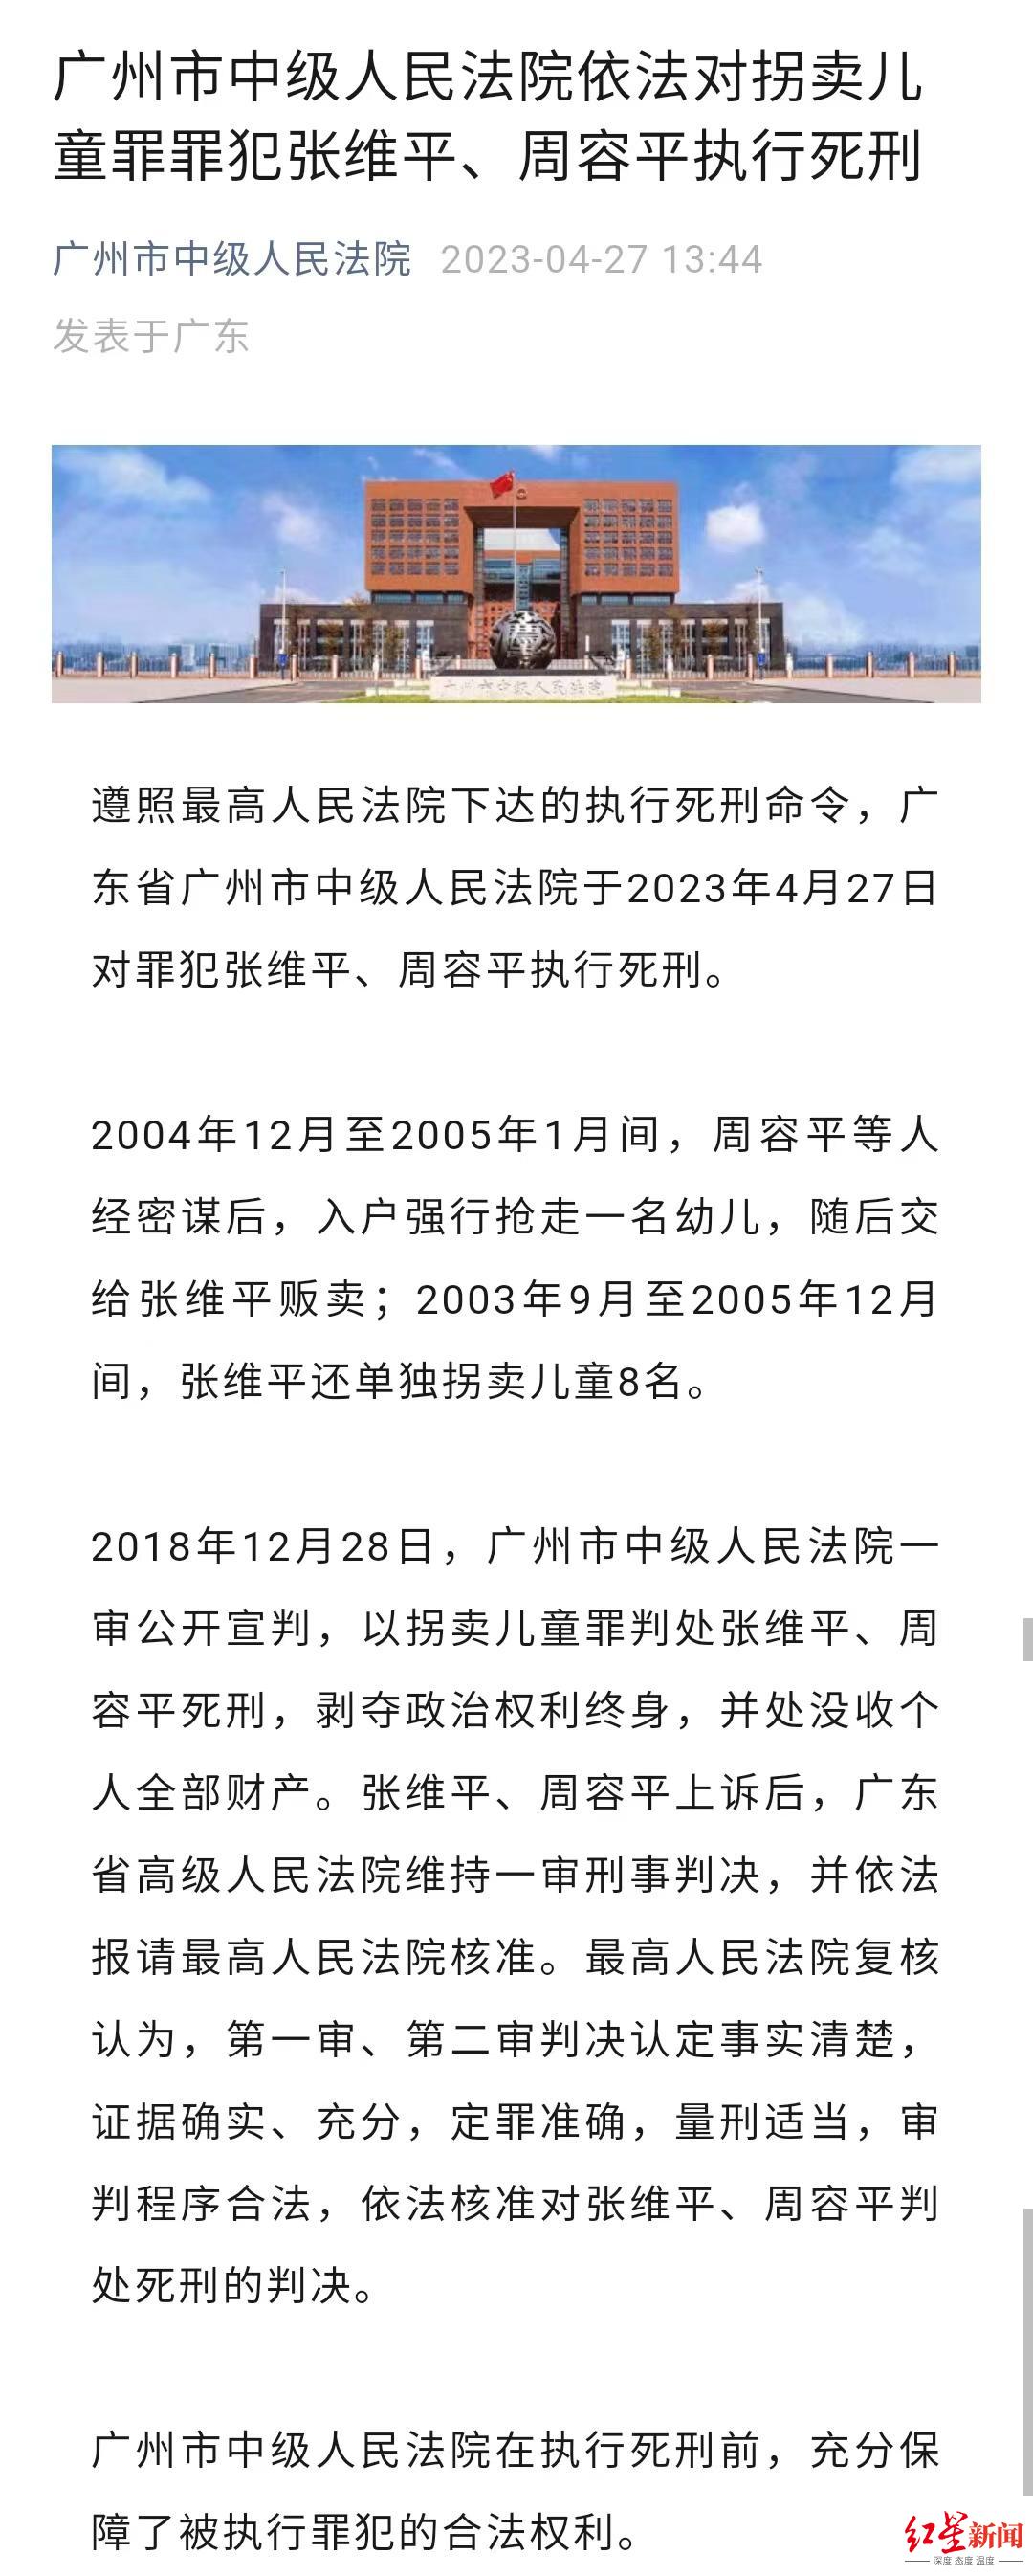 ↑广州市中院宣布张维平、周容平被执行死刑